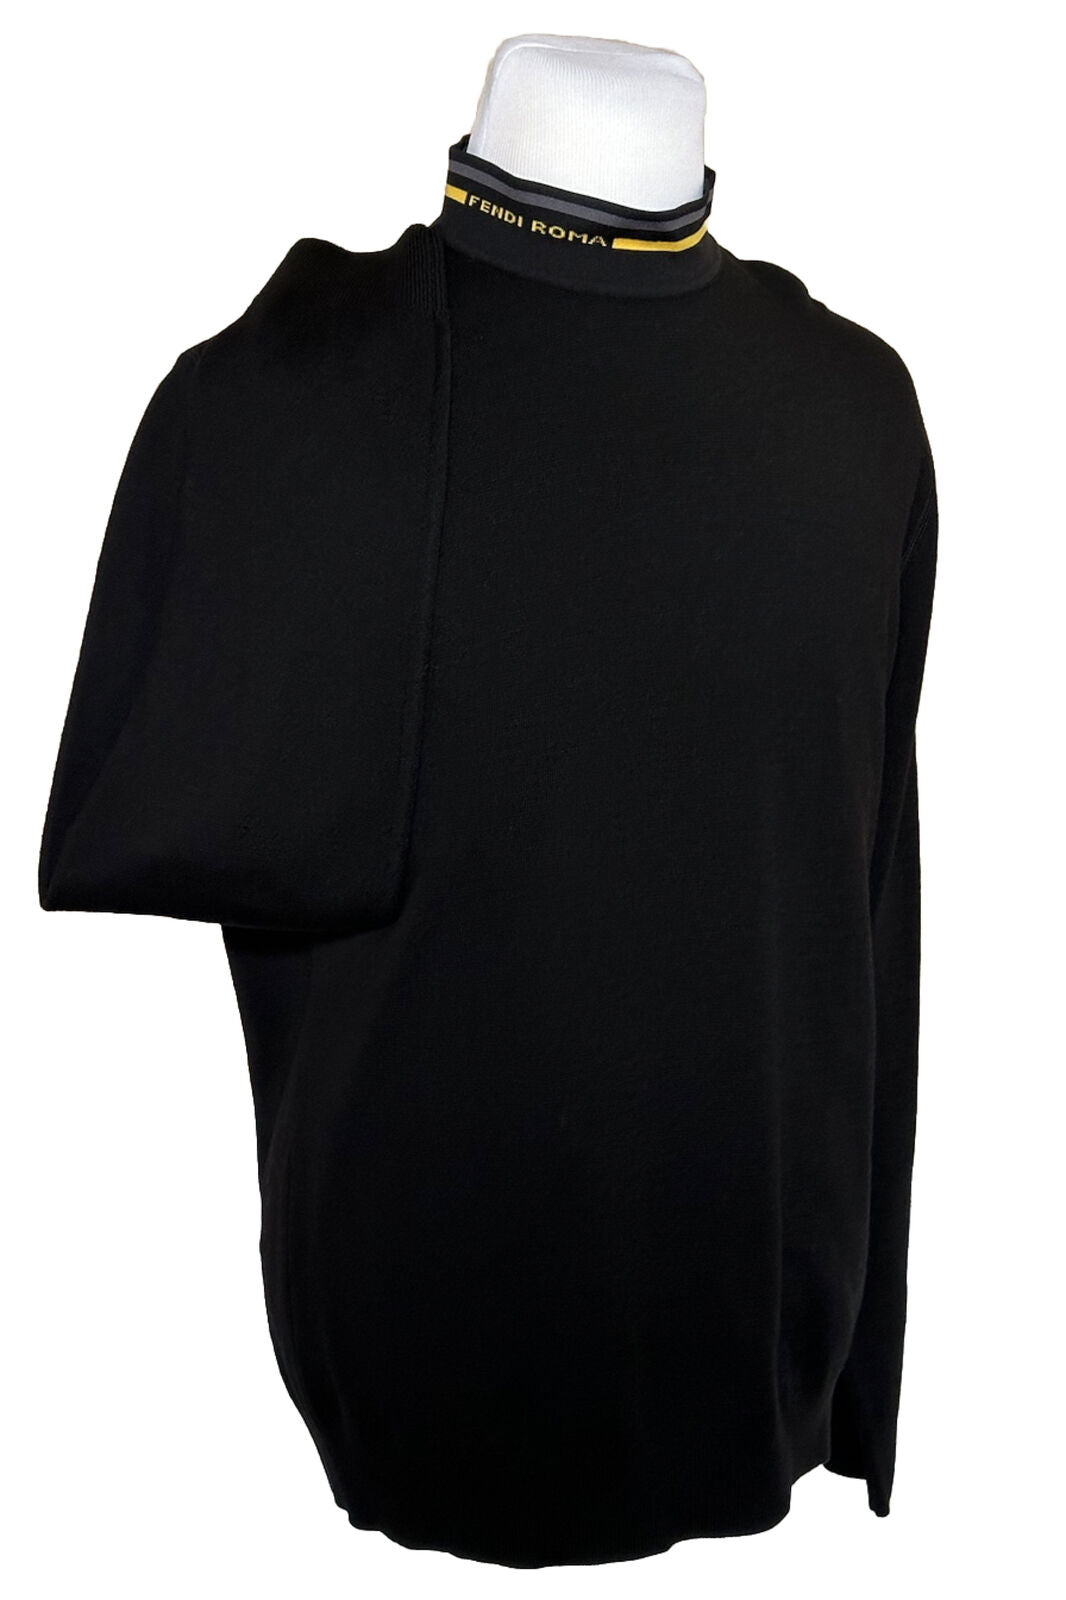 NWT $850 Шерстяной вязаный свитер Fendi Черный 54 евро FZY464 Сделано в Италии 